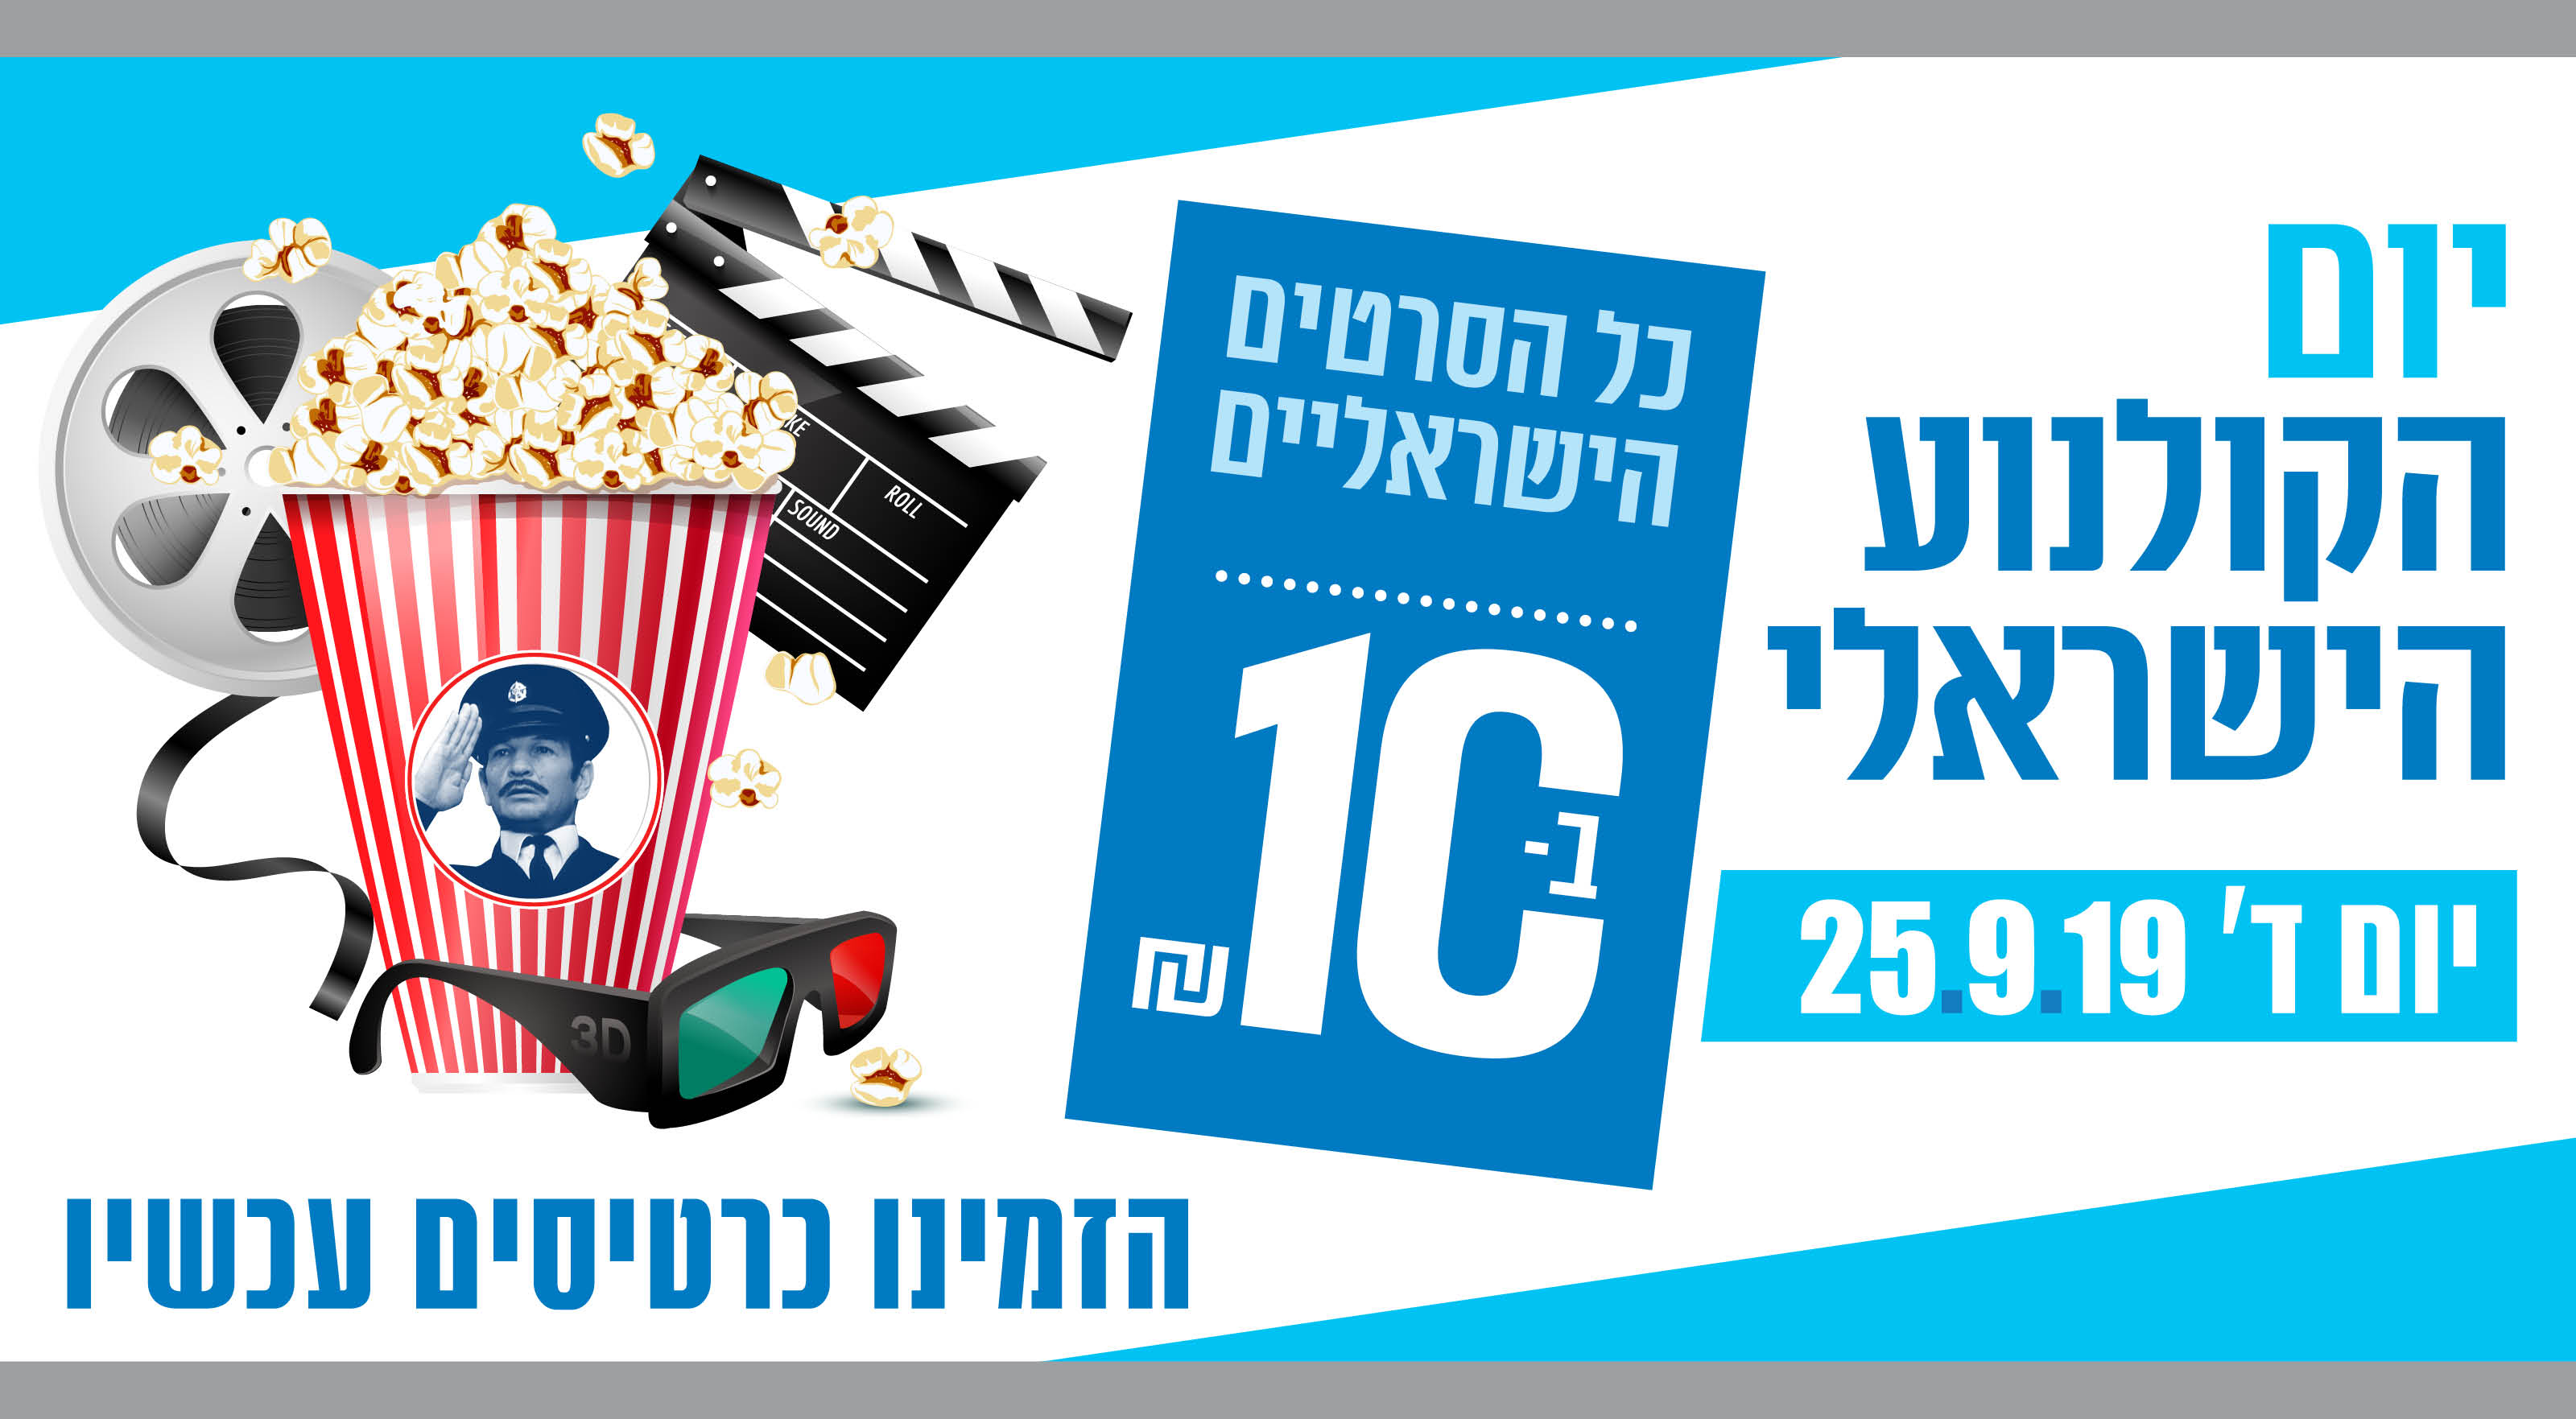 יום הקולנוע הישראלי יום רביעי 25.9.19 כל הסרטים הישראליים ב- 10 שח בלבד